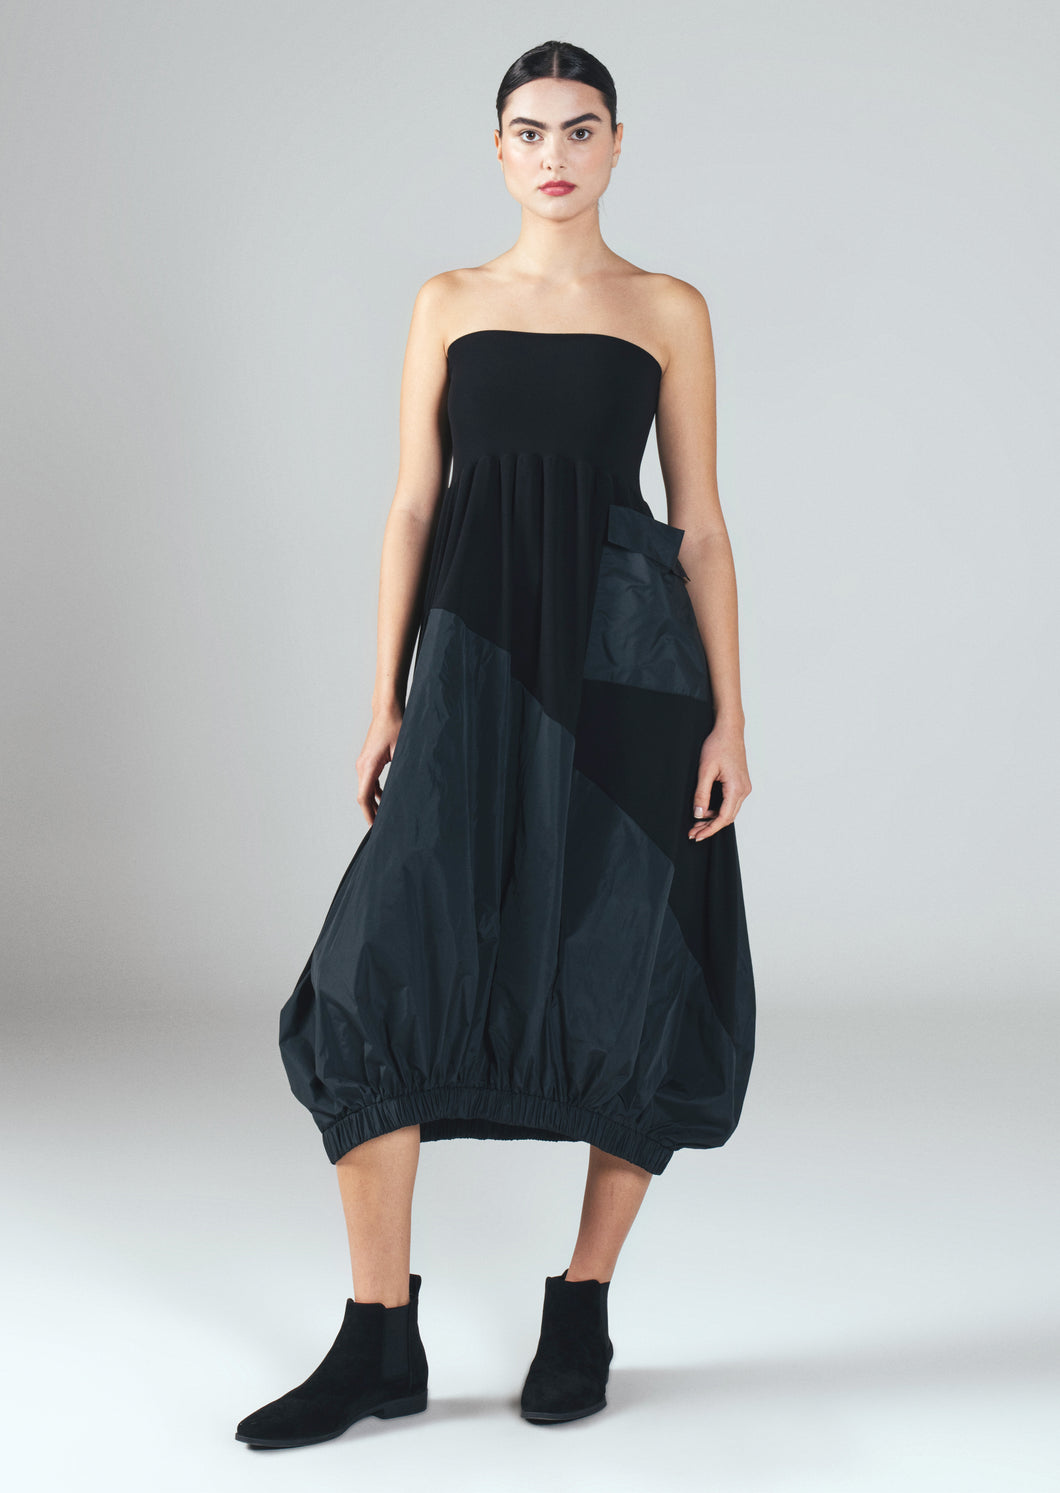 Dress/Skirt New Jersey